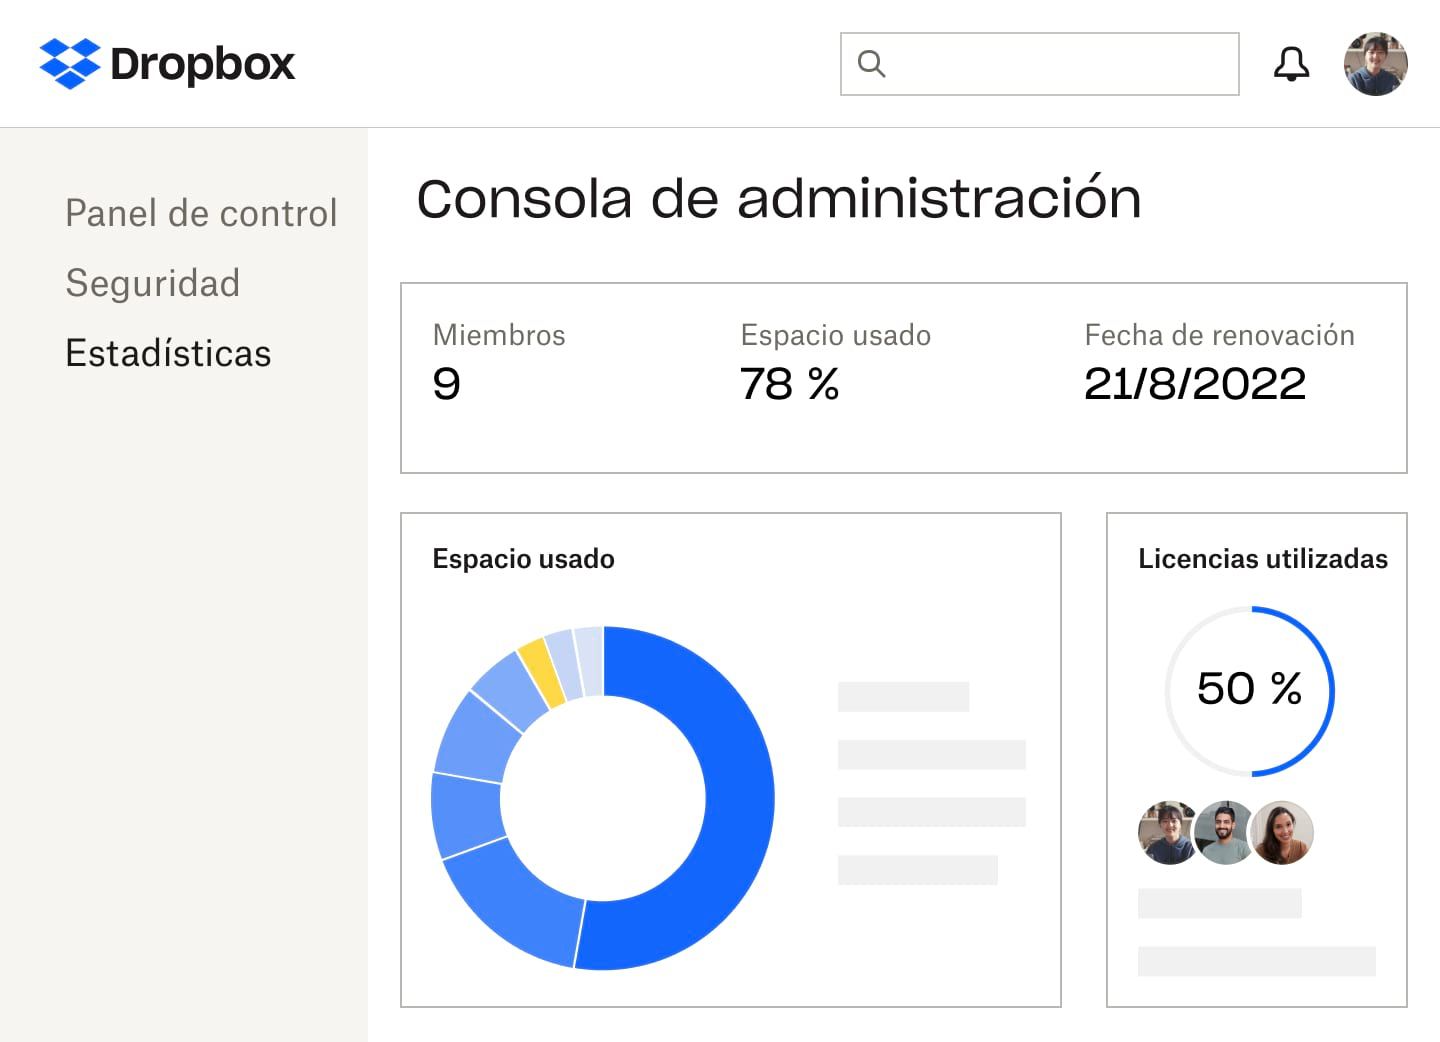 La consola de administración de Dropbox que muestra la cantidad de miembros, el porcentaje de espacio de almacenamiento y de licencias utilizado, la fecha de renovación de la suscripción y un gráfico circular azul y amarillo del espacio empleado